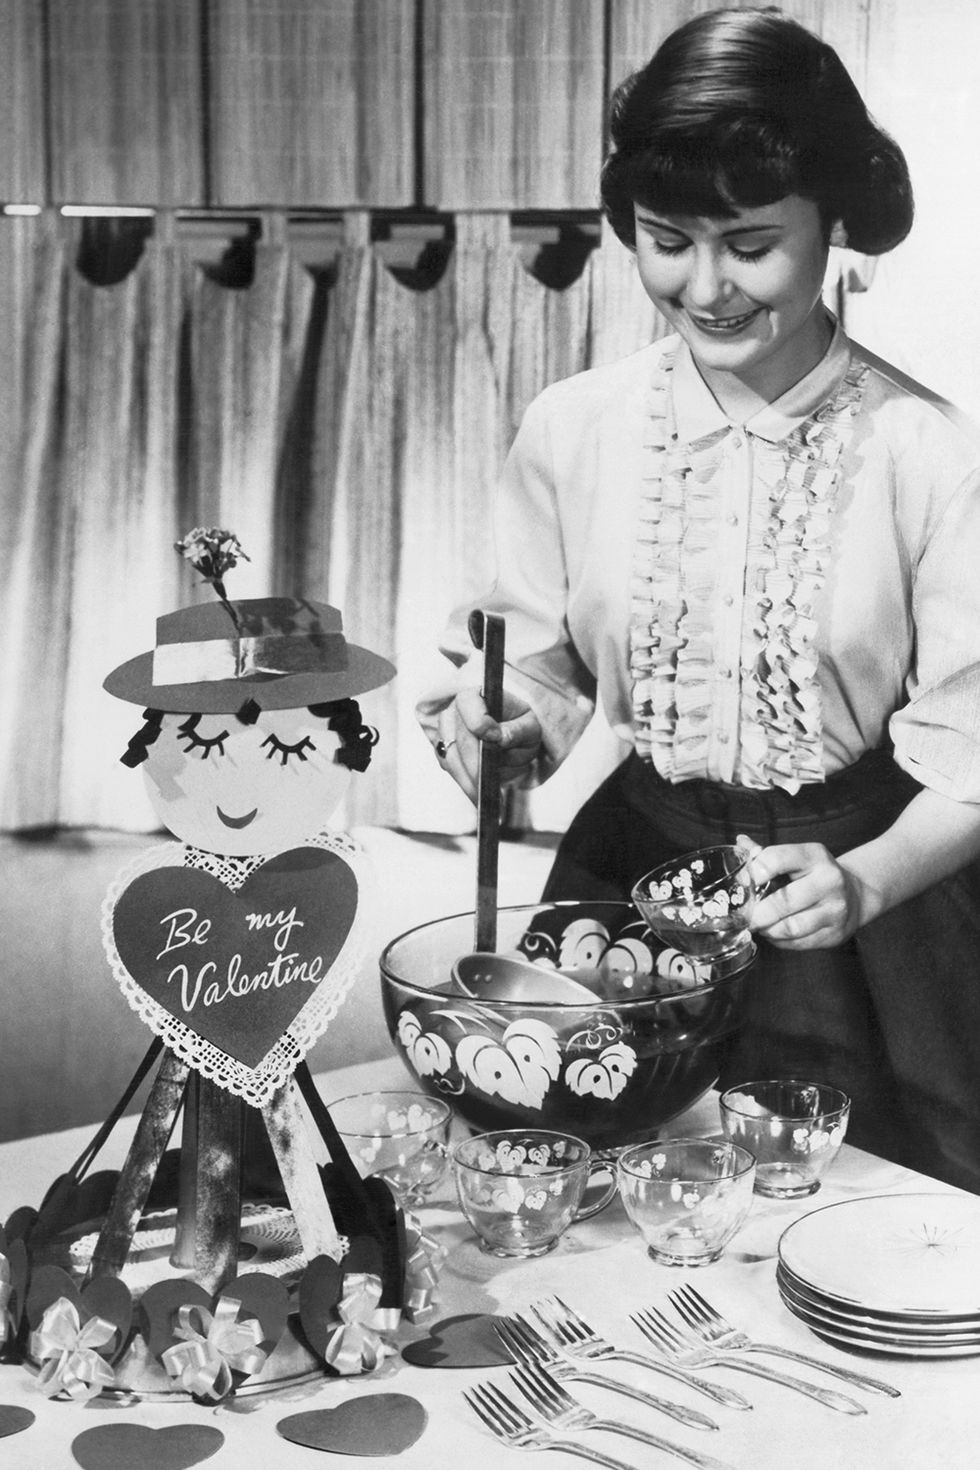 VINTAGE BRACHS VALENTINES CANDY BOX 1950S